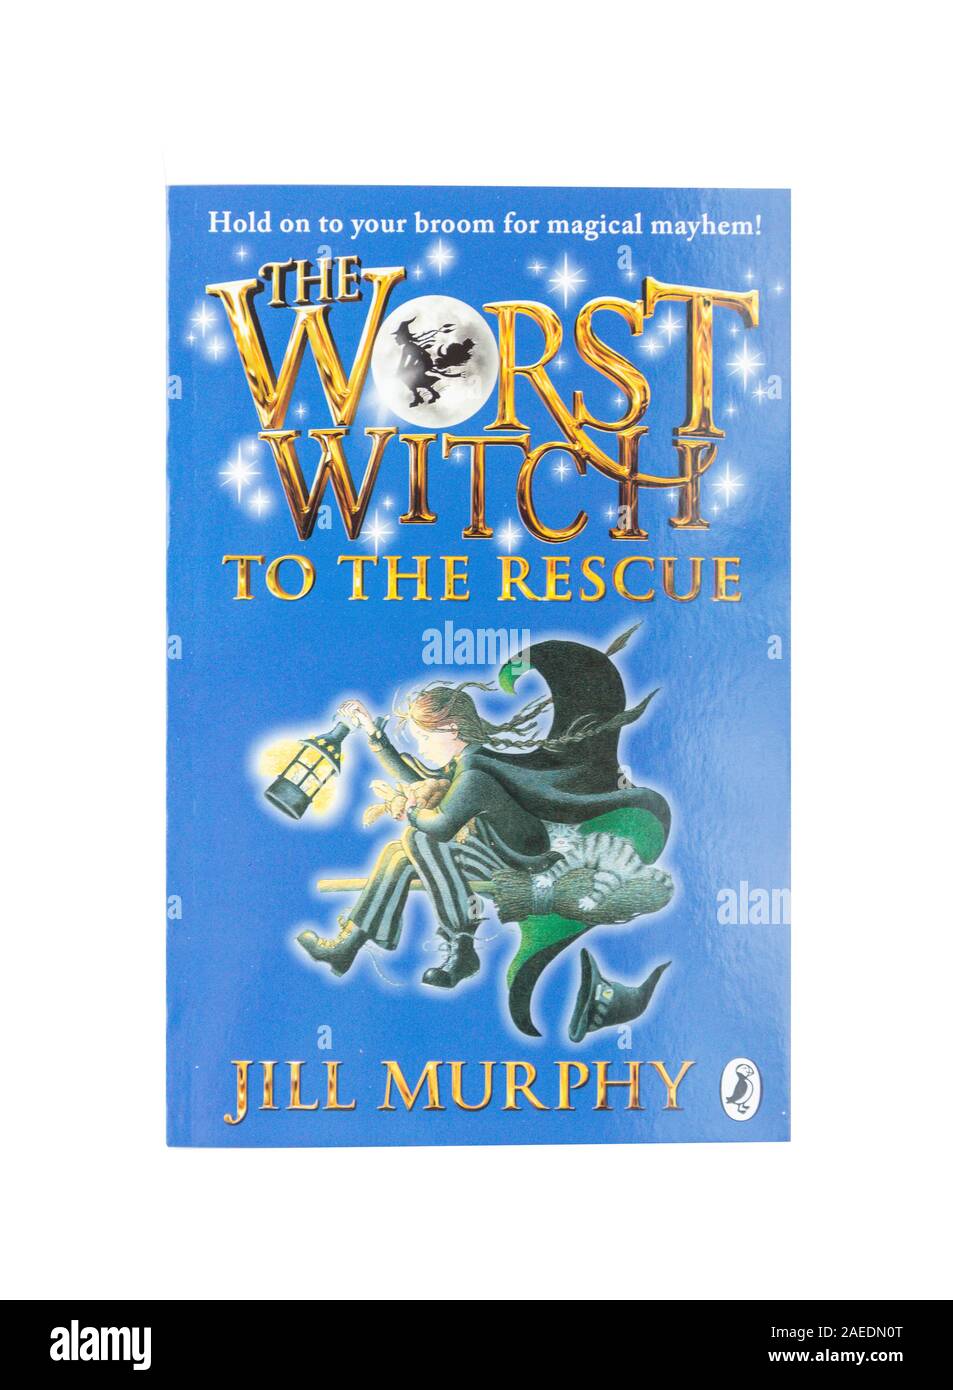 "La pire sorcière à l'opération de sauvetage, le livre d'enfants de Jill Murphy, Greater London, Angleterre, Royaume-Uni Banque D'Images